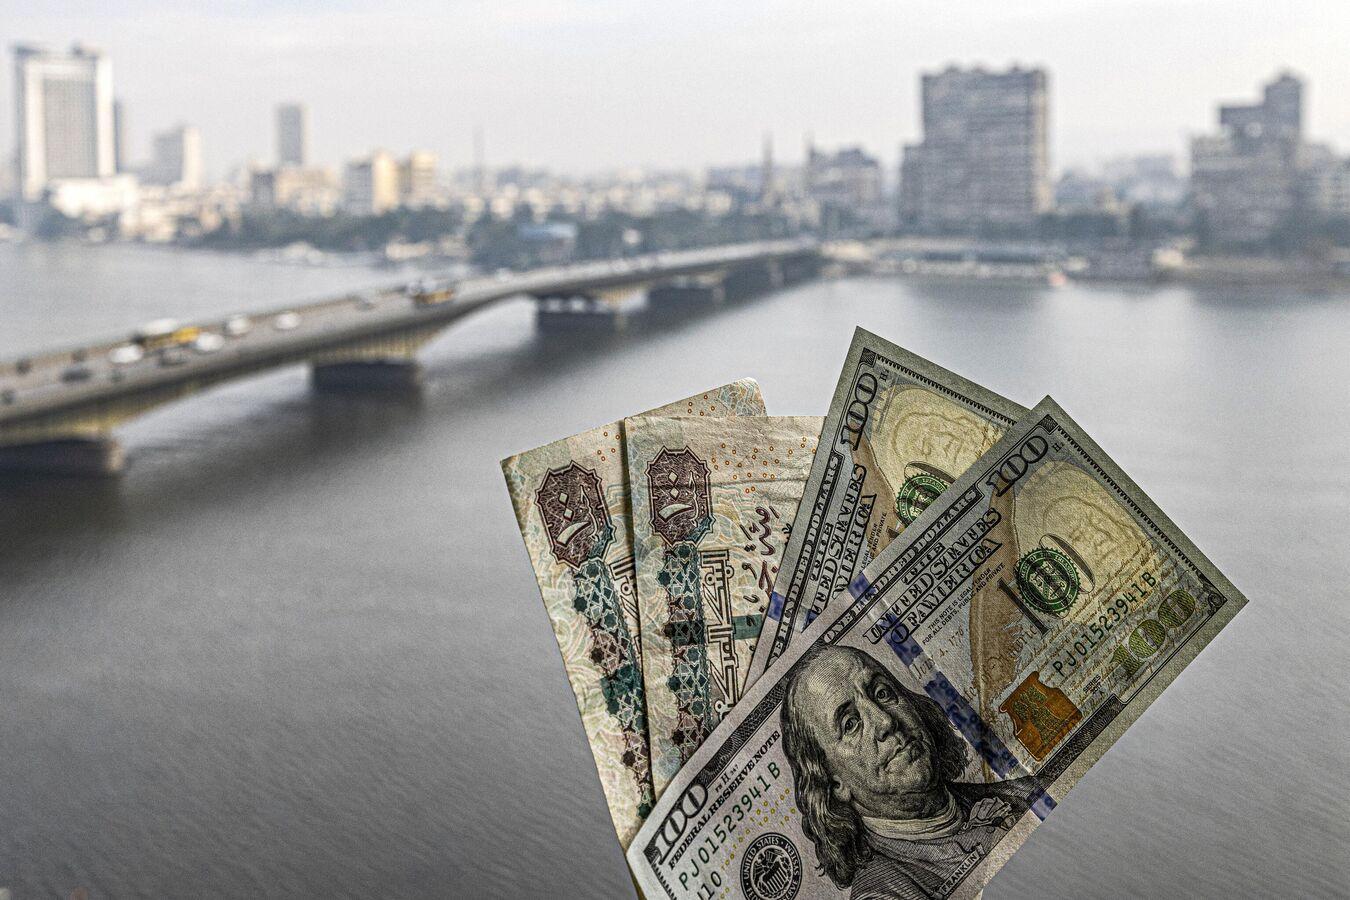 مصر تعلق على تغيير وكالة "فيتش" نظرتها المستقبلية لاقتصاد البلاد